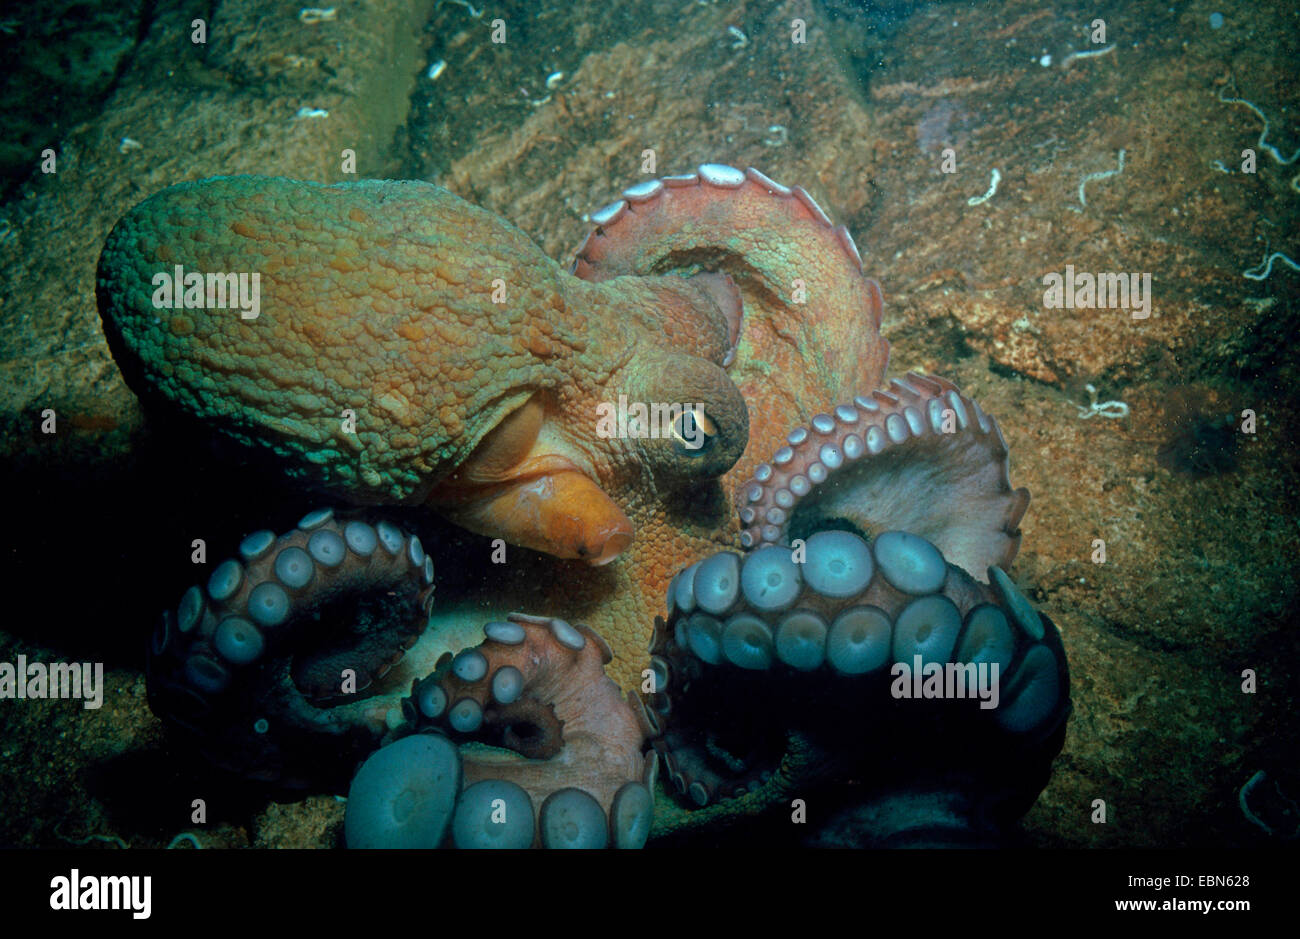 common octopus, common Atlantic octopus, common European octopus (Octopus vulgaris), on rocky sea ground Stock Photo